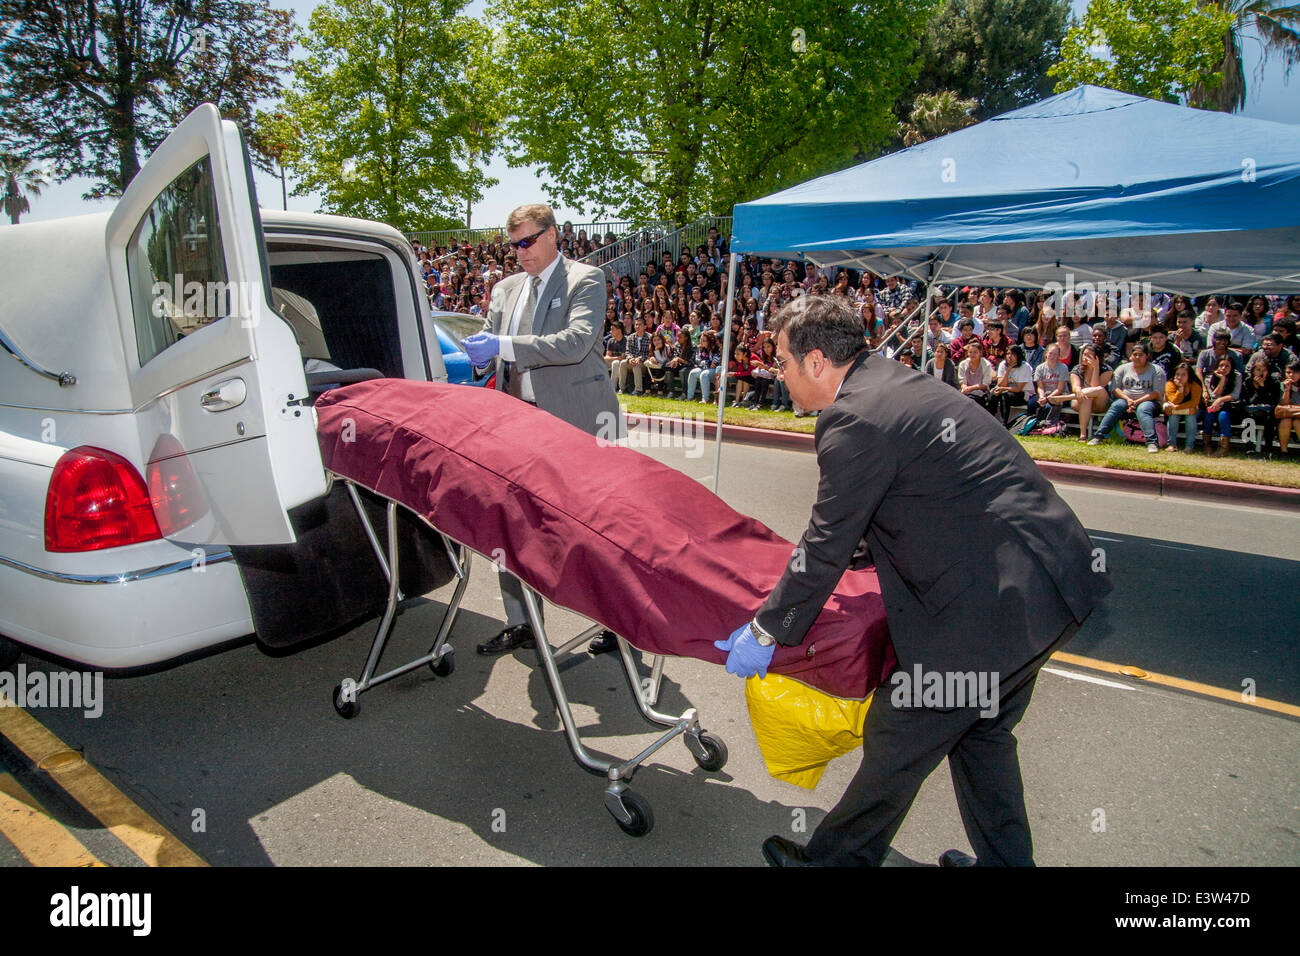 Des bénévoles locaux undertakers charger le 'Corpse' de la victime d'un accident dans un corbillard dans une dramatisation pour des élèves du secondaire sur les dangers de l'alcool au volant à Anaheim, CA. Remarque foule en arrière-plan. Banque D'Images